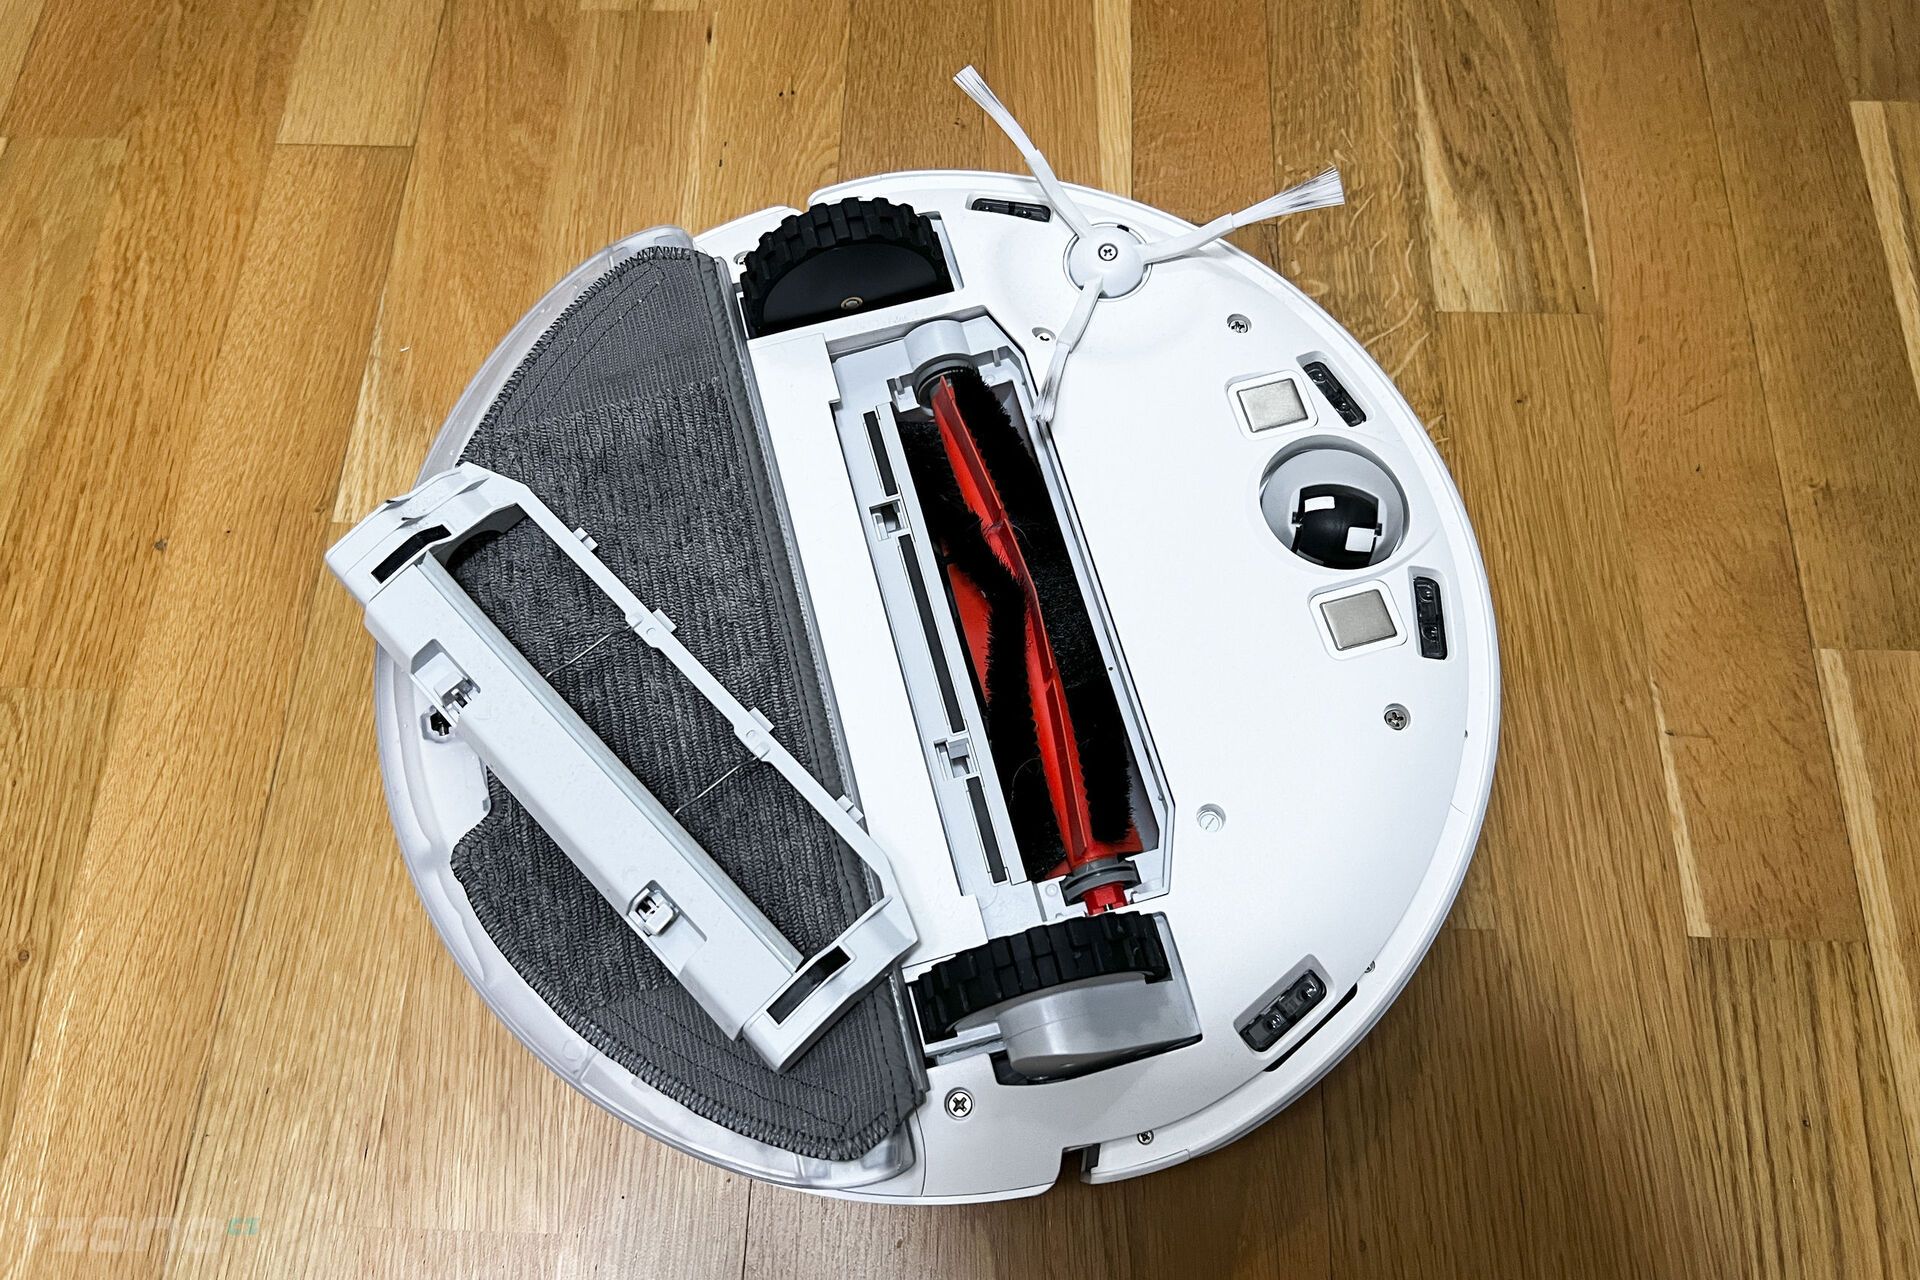 Xiaomi Mi Robot Vacuum Mop 2 Lite